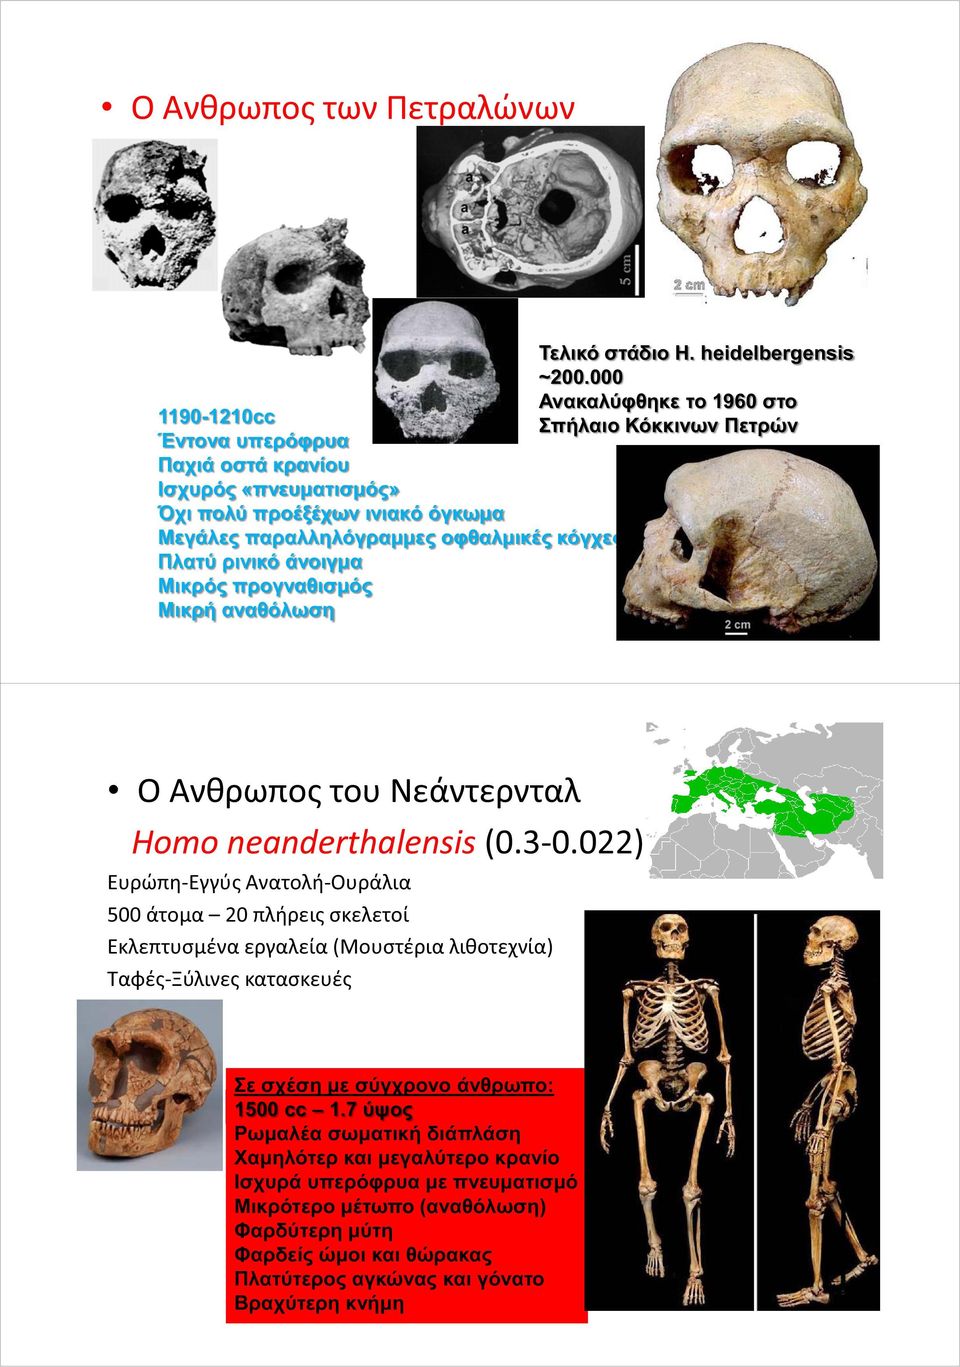 οφθαλμικές κόγχες Πλατύ ρινικό άνοιγμα Μικρός προγναθισμός Μικρή αναθόλωση Ο Ανθρωπος του Νεάντερνταλ Homo neanderthalensis (0.3-0.